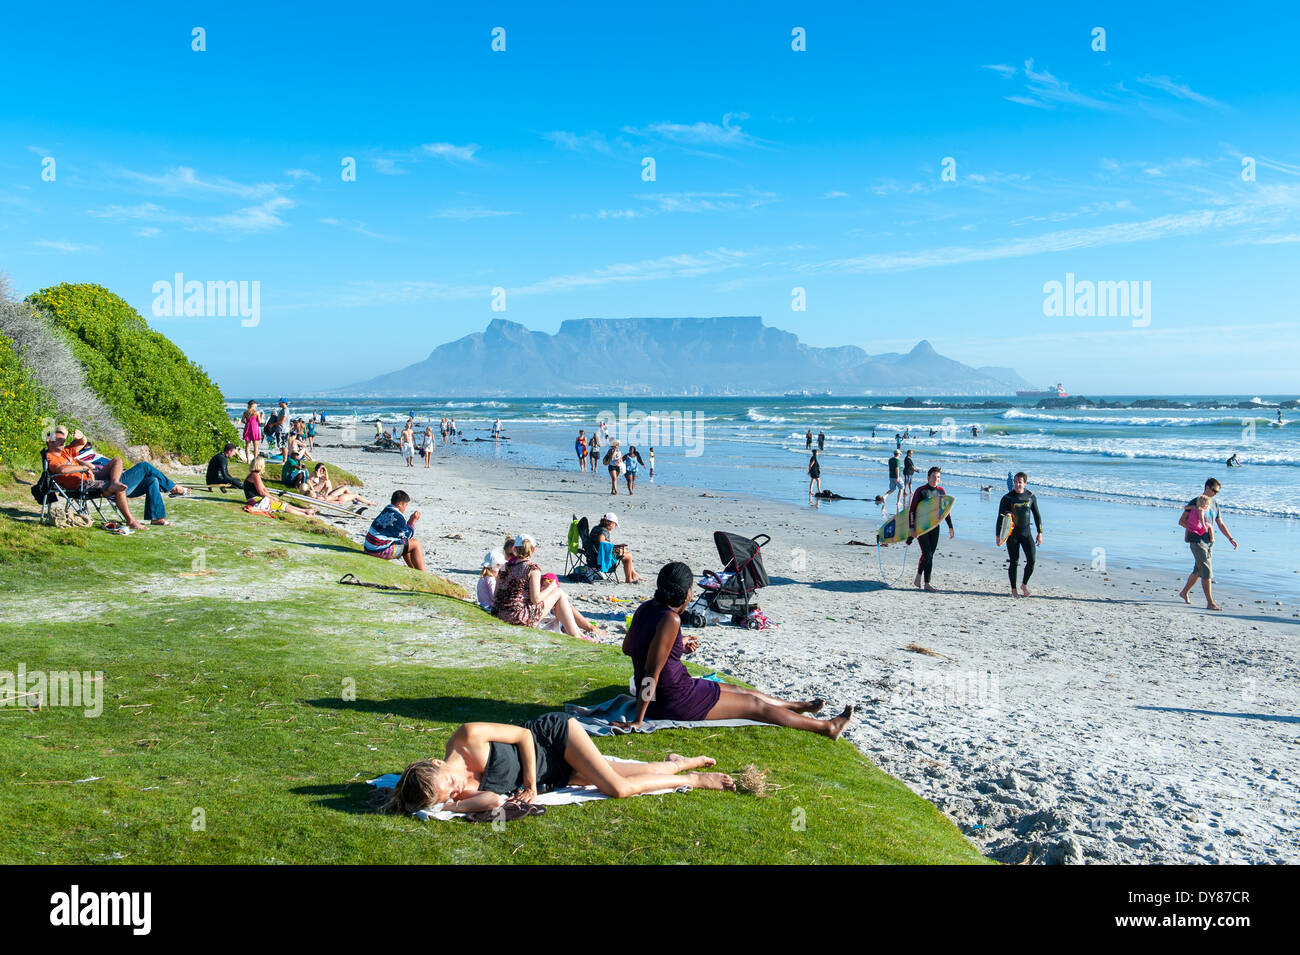 Les gens qui marchent sur la plage de Blouberg, Table Mountain, dans l'arrière-plan, Afrique du Sud Banque D'Images